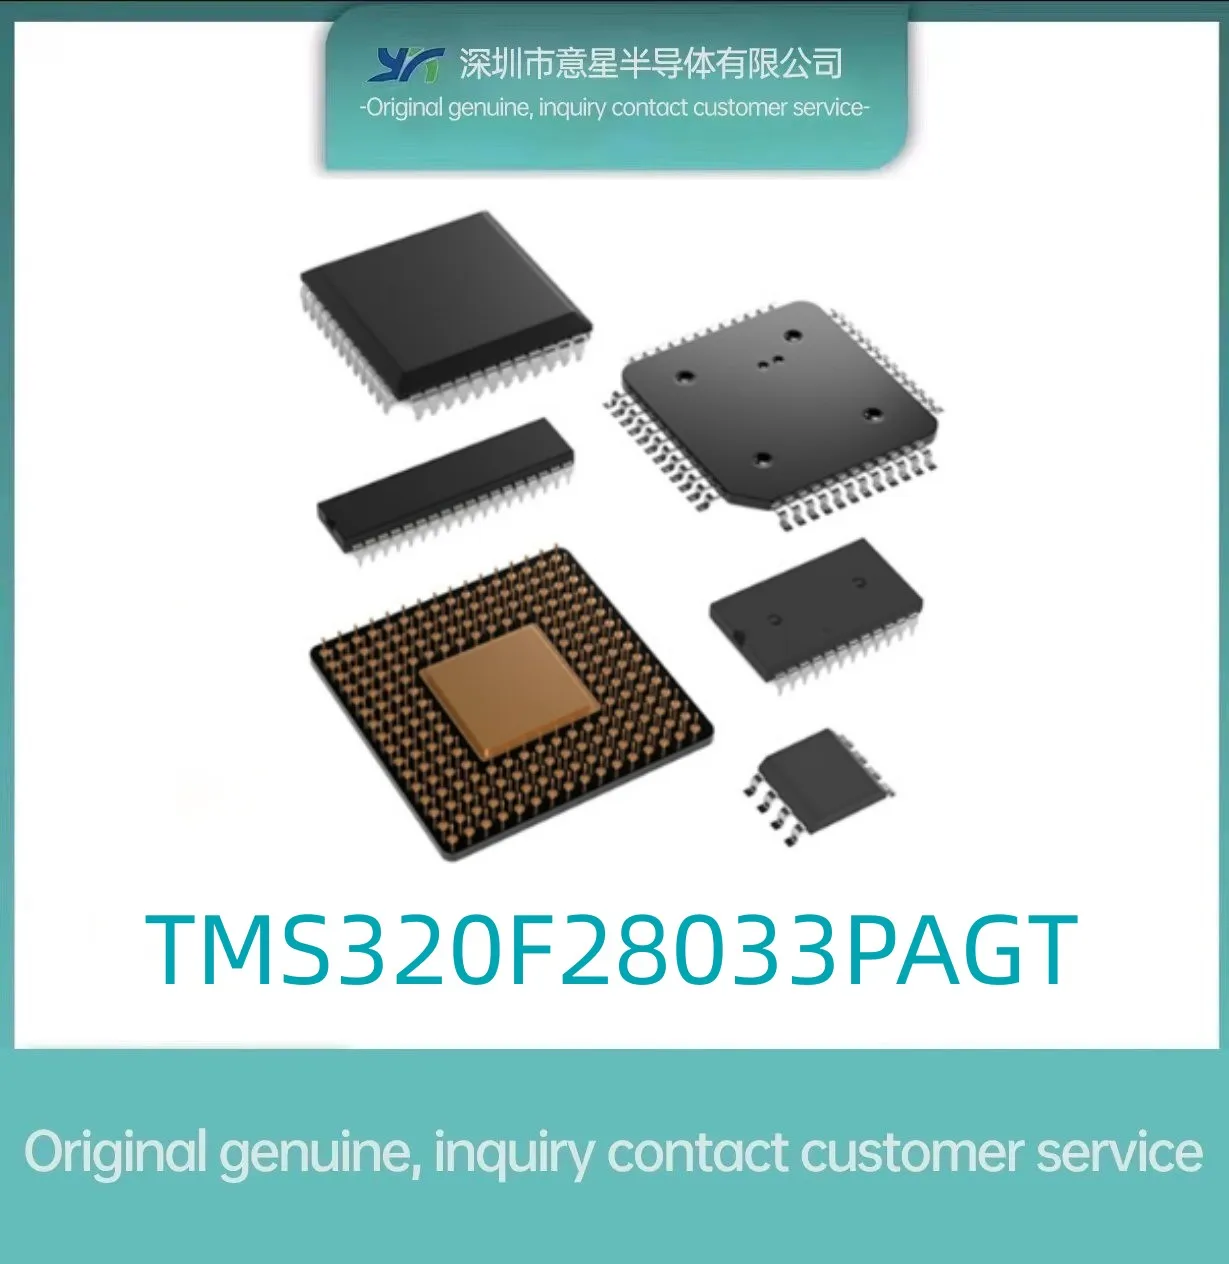 TMS320F28033 Пакет PAGT микроконтроллер TQFP64 spot original подлинный Изображение 0